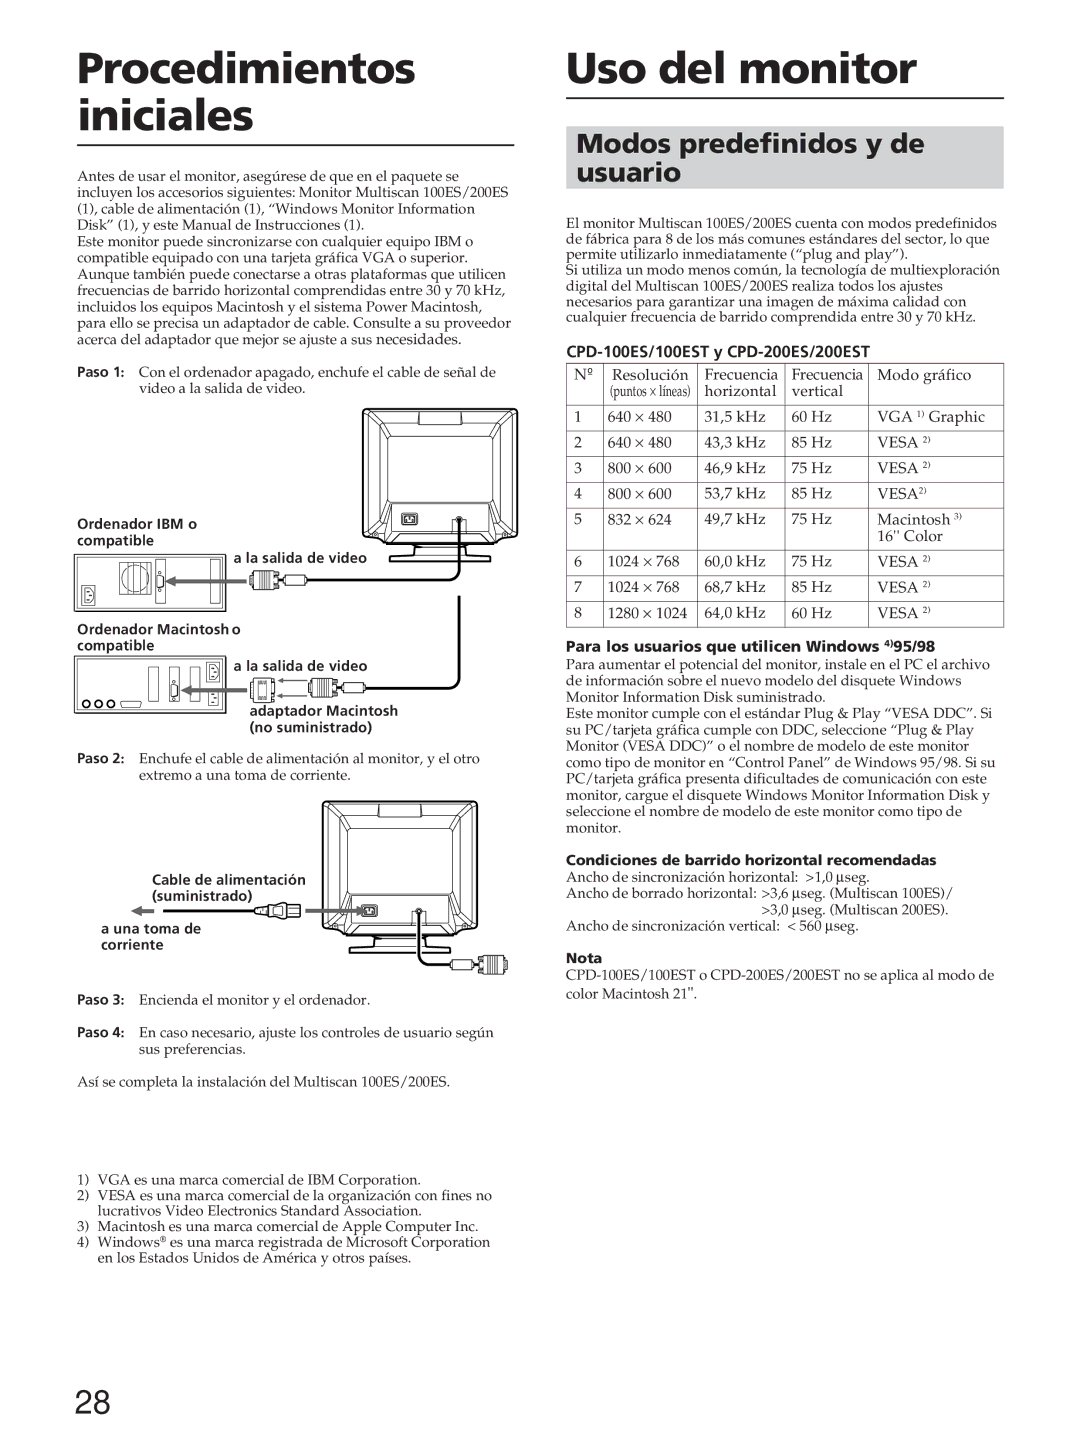 Sony CPD-200ES, CPD-200EST, CPD-100ES, CPD-100EST manual Procedimientos iniciales, Uso del monitor 